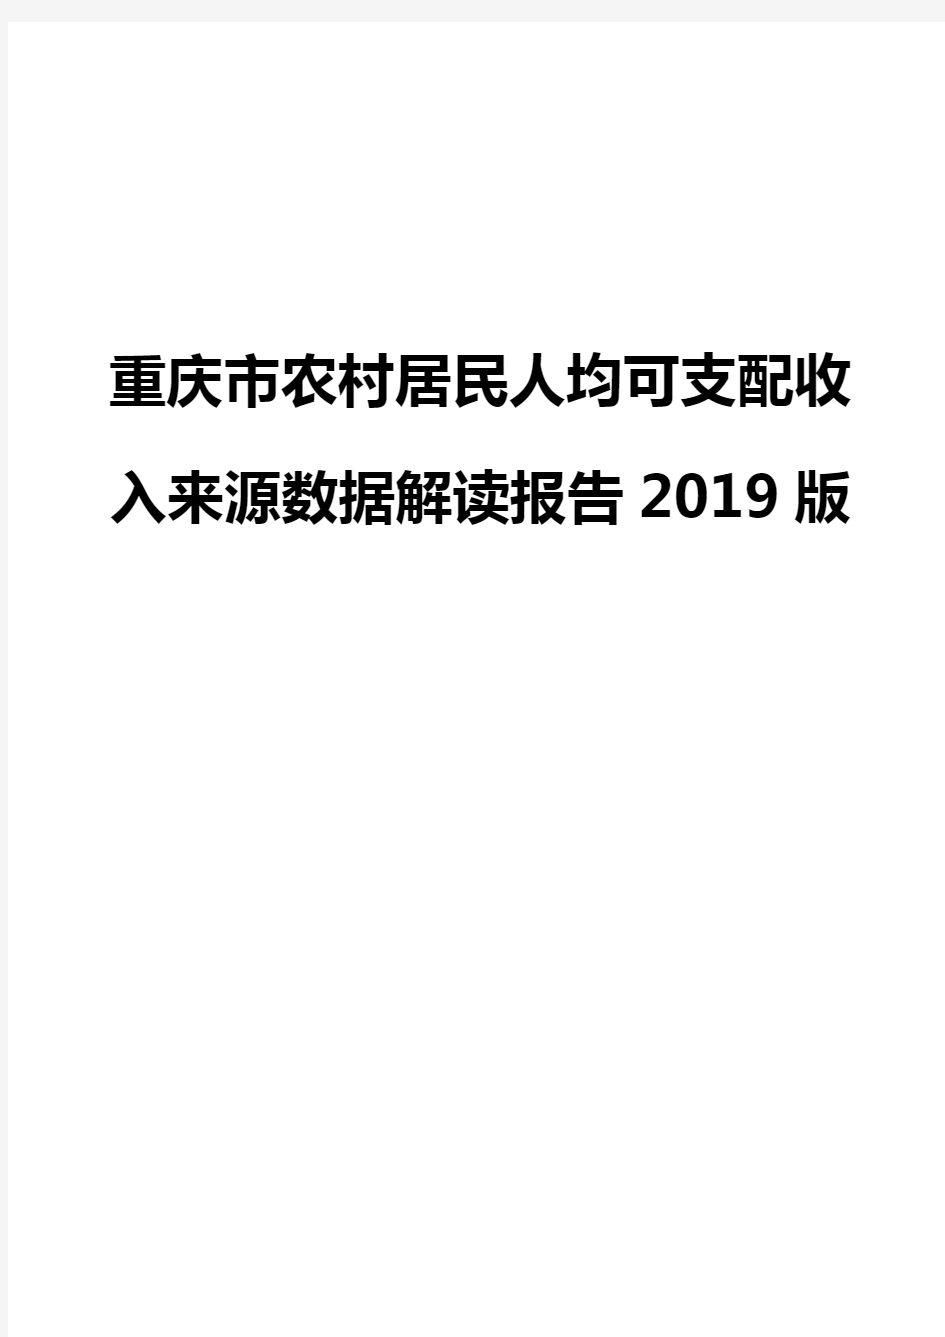 重庆市农村居民人均可支配收入来源数据解读报告2019版